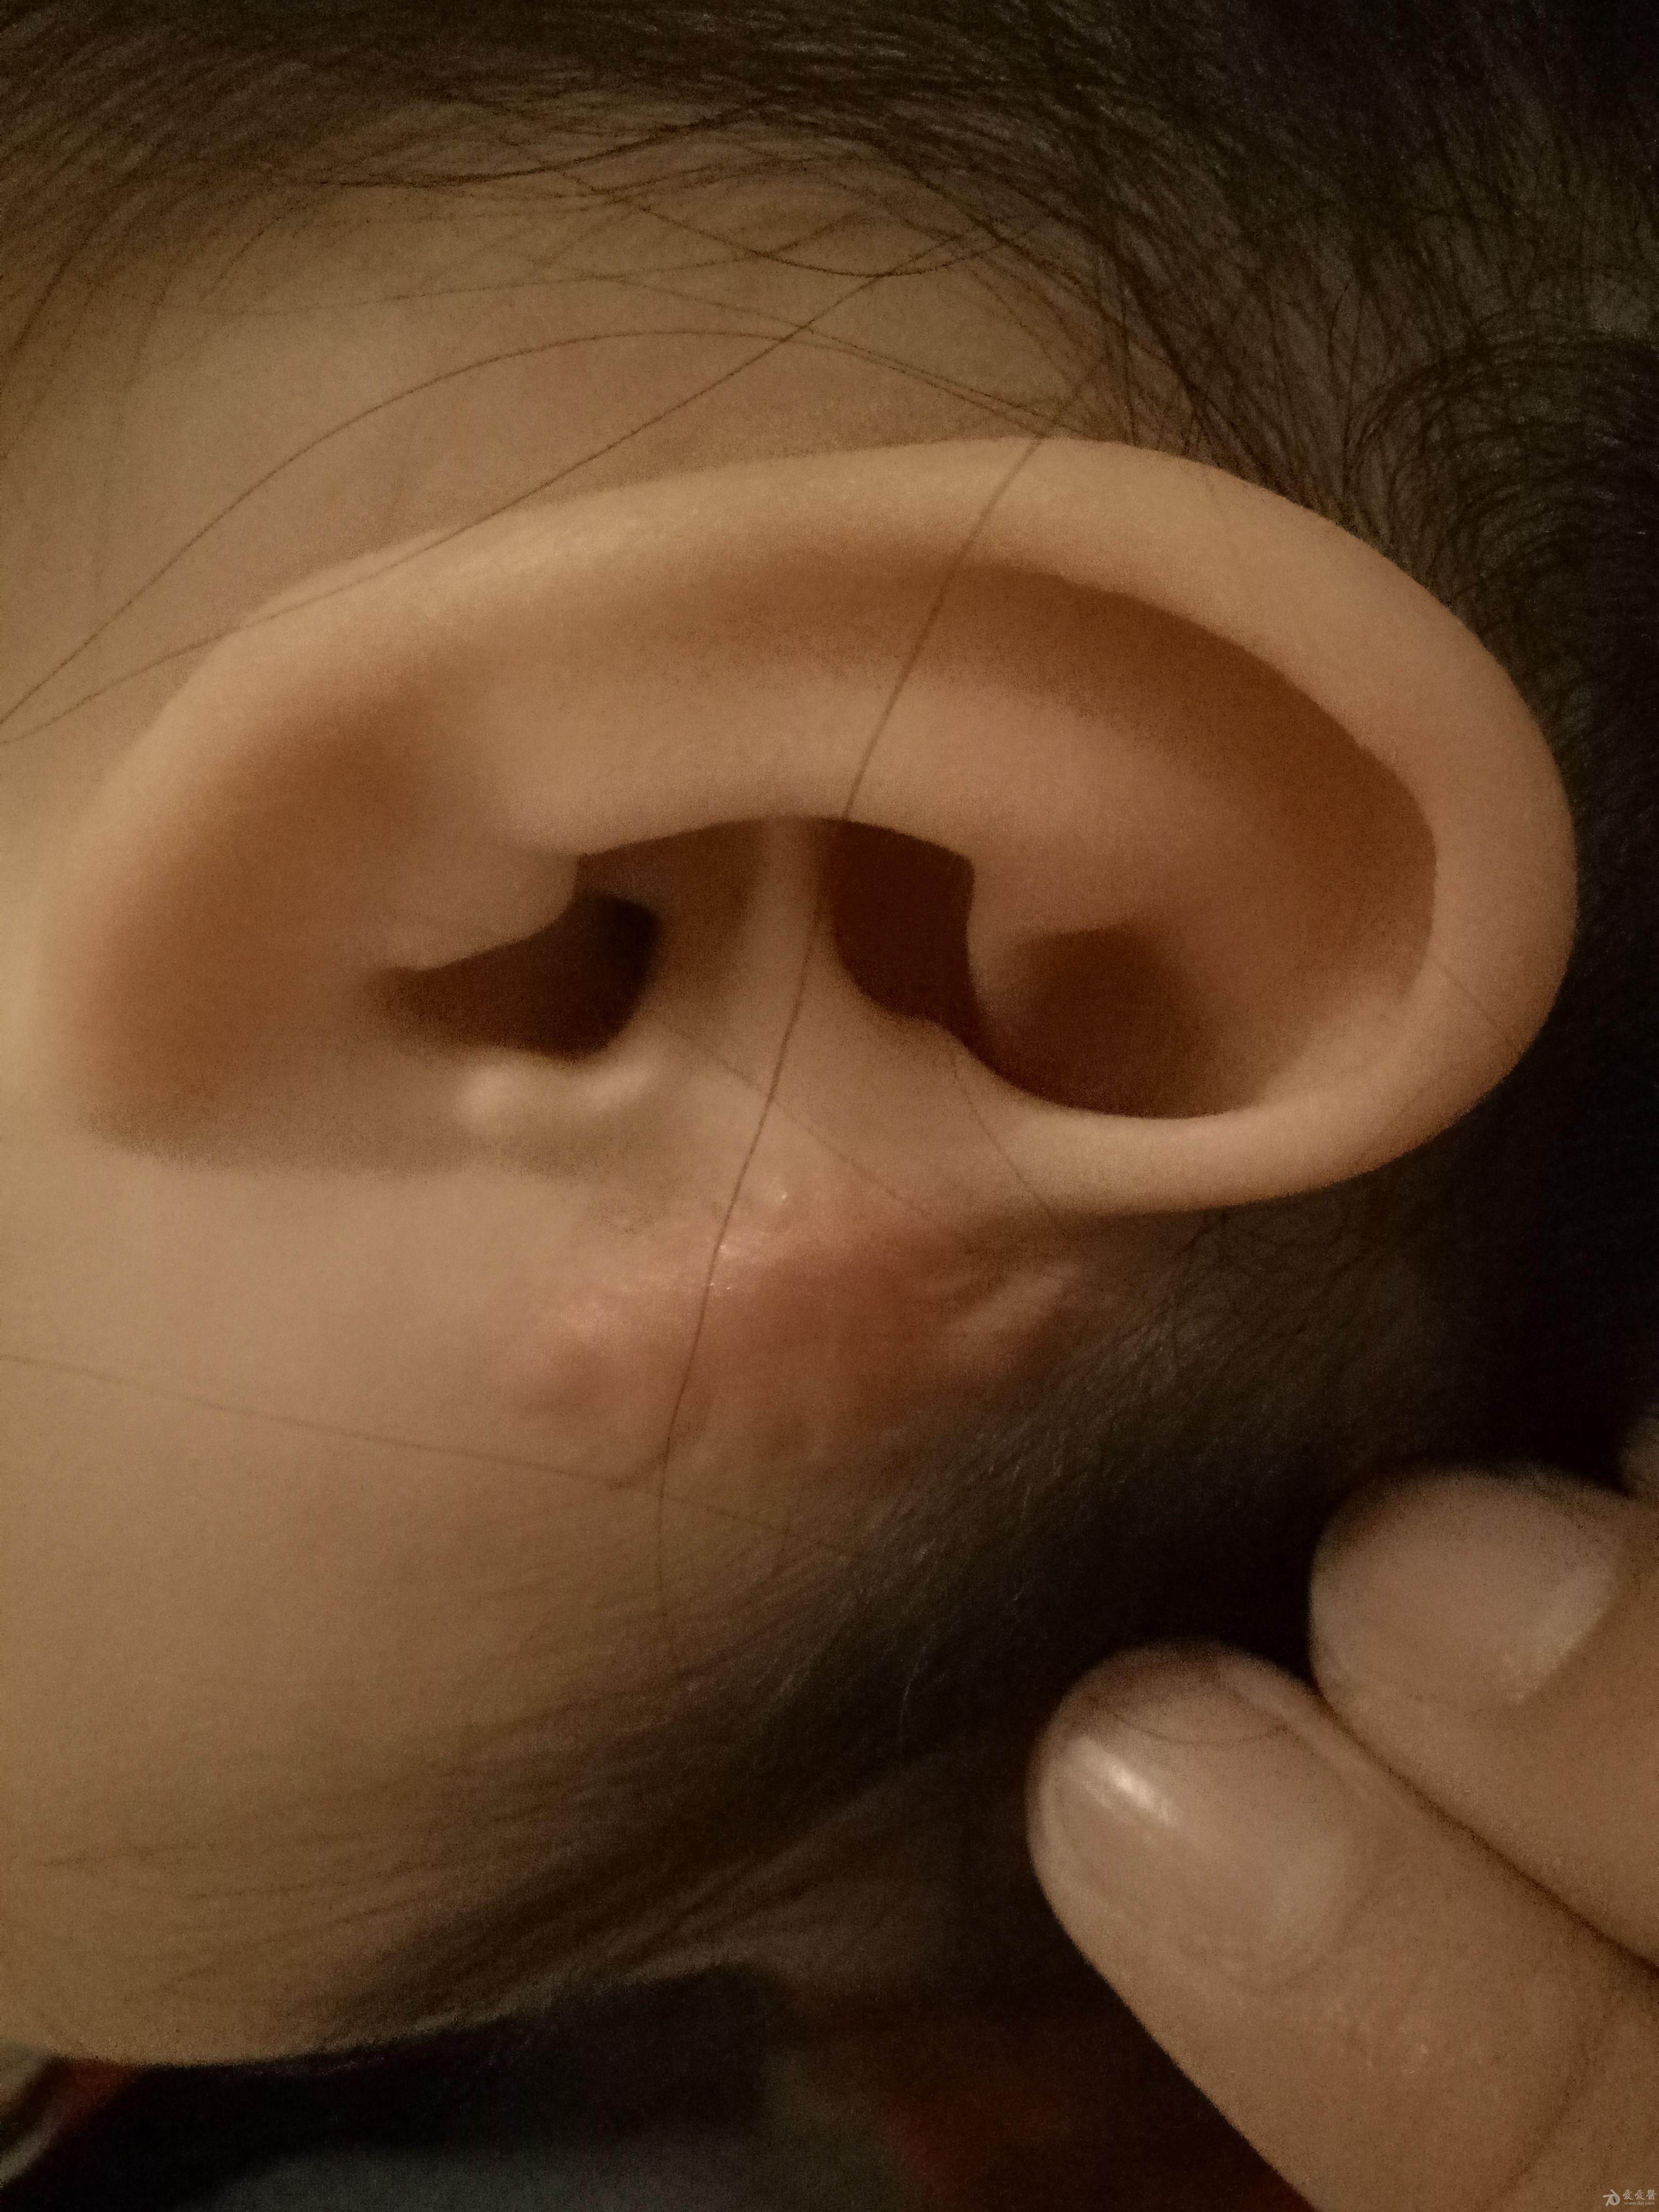 耳前瘘管手术后疤痕图片